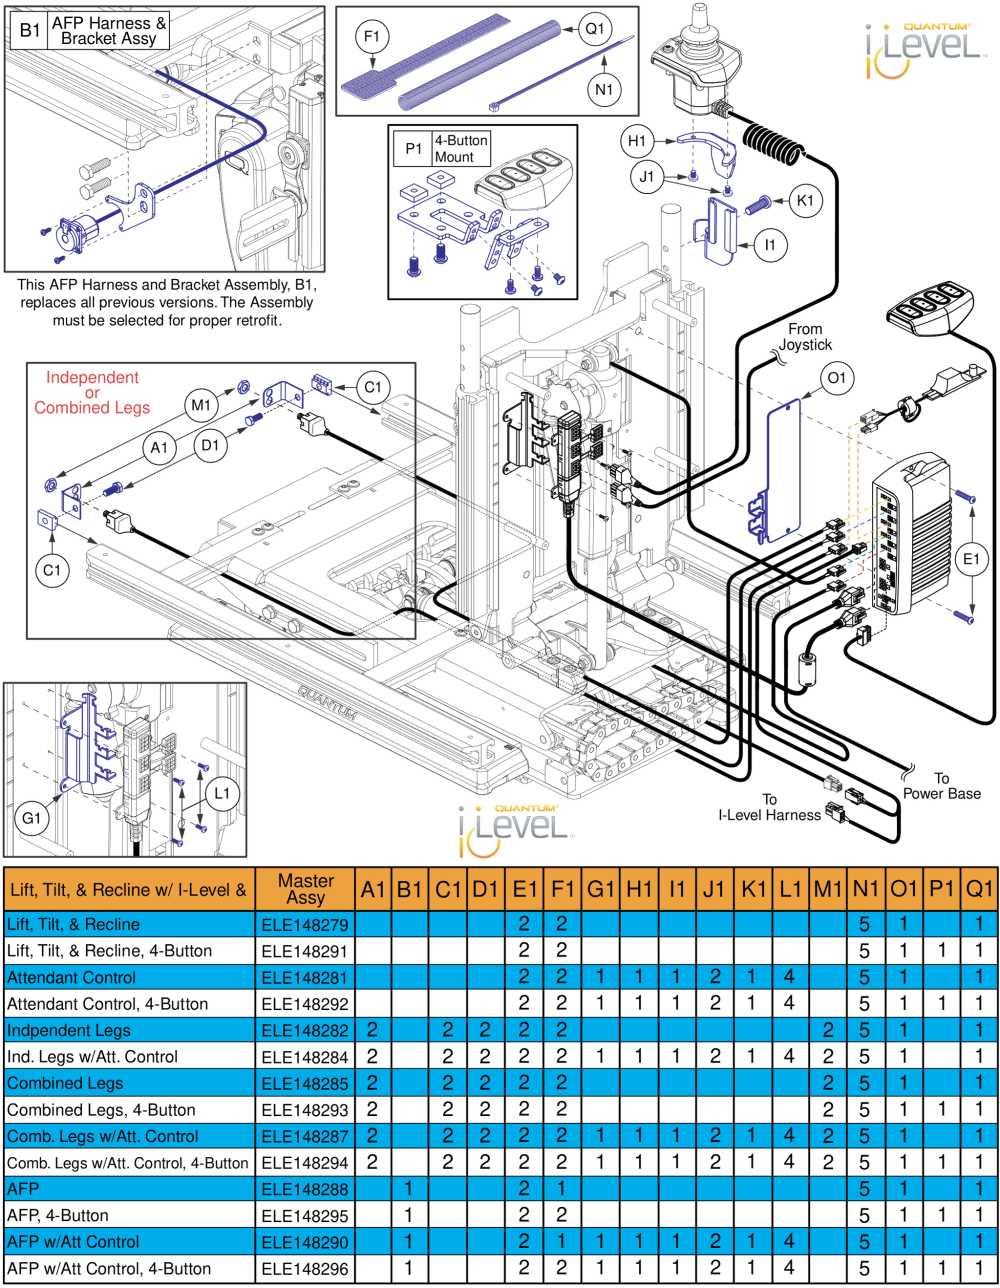 Lift, Tilt, & Recline Hardware, Q-logic 2 - Reac Lift / I-level parts diagram